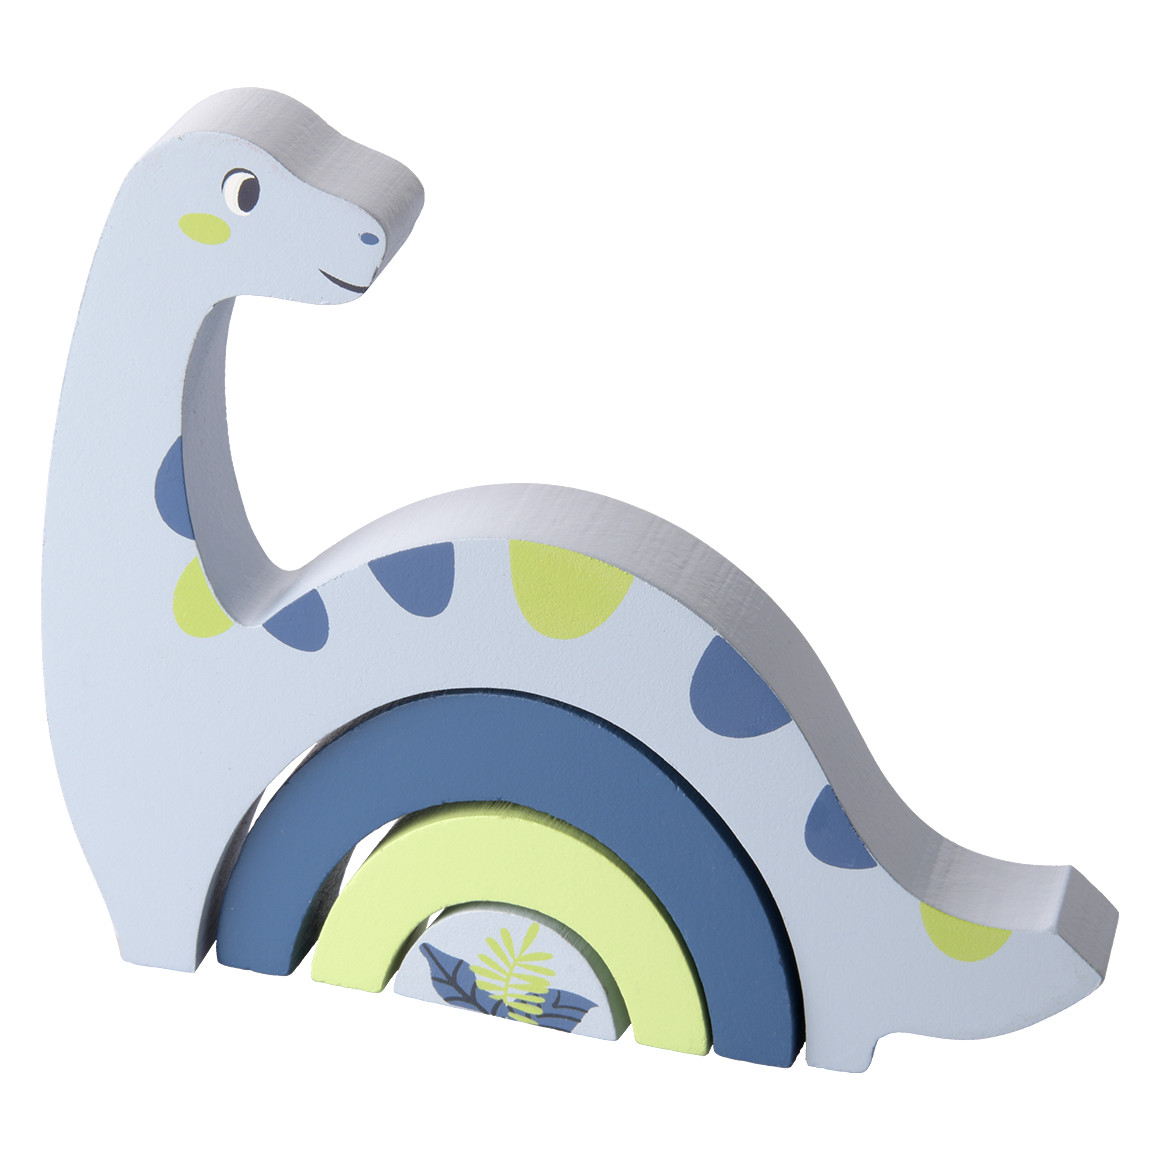 Stapelbogen in Dino-Form von Topolino